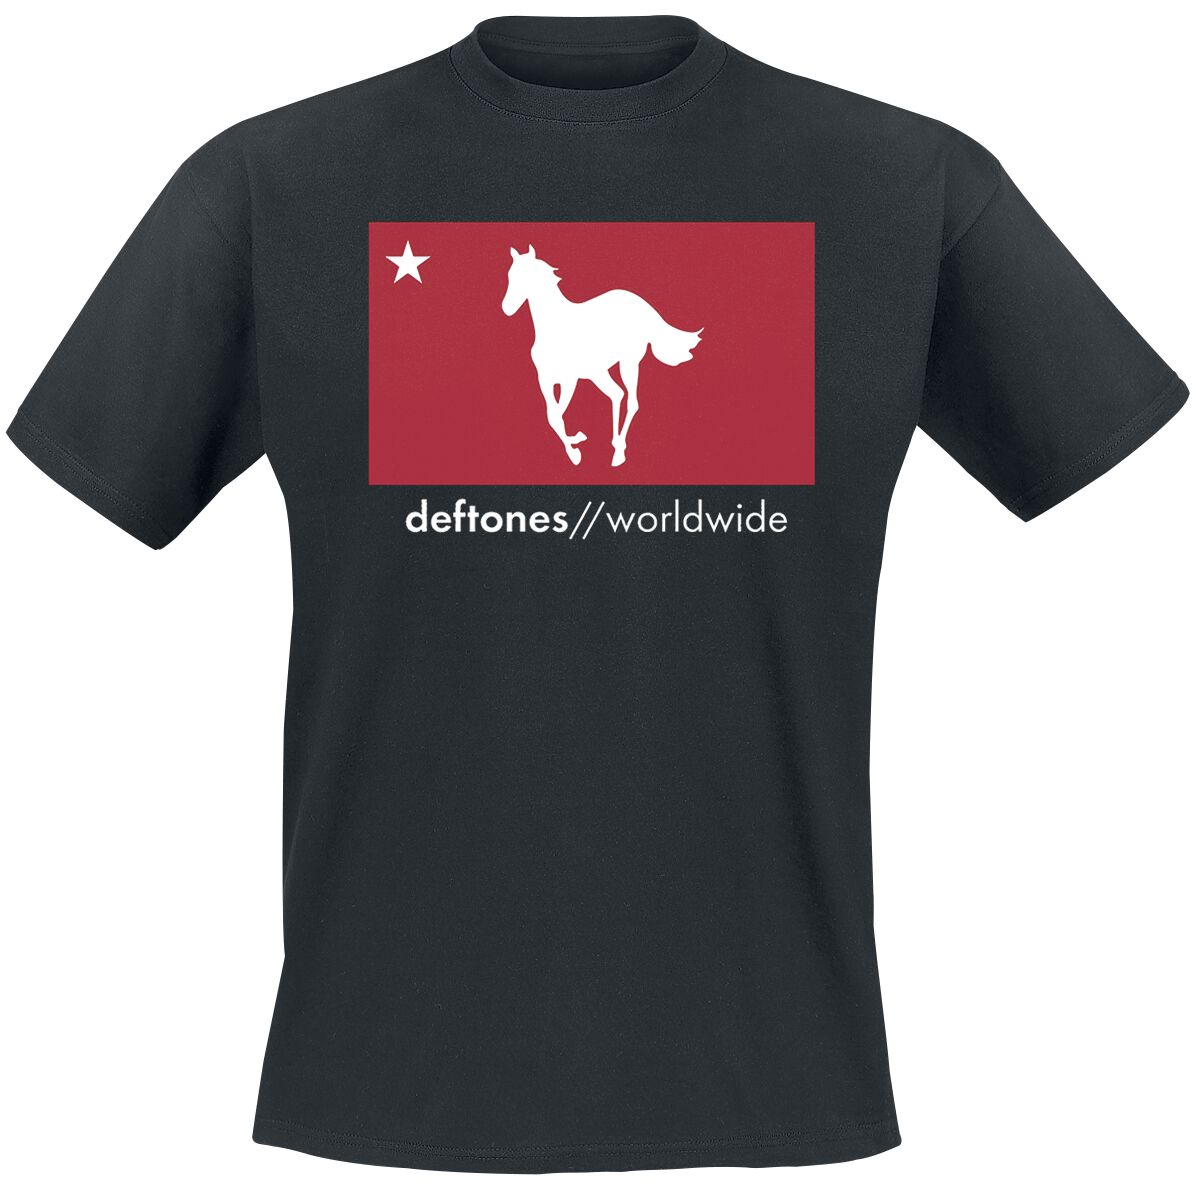 Deftones T-Shirt - Worldwide - M bis L - für Männer - Größe M - schwarz  - Lizenziertes Merchandise!